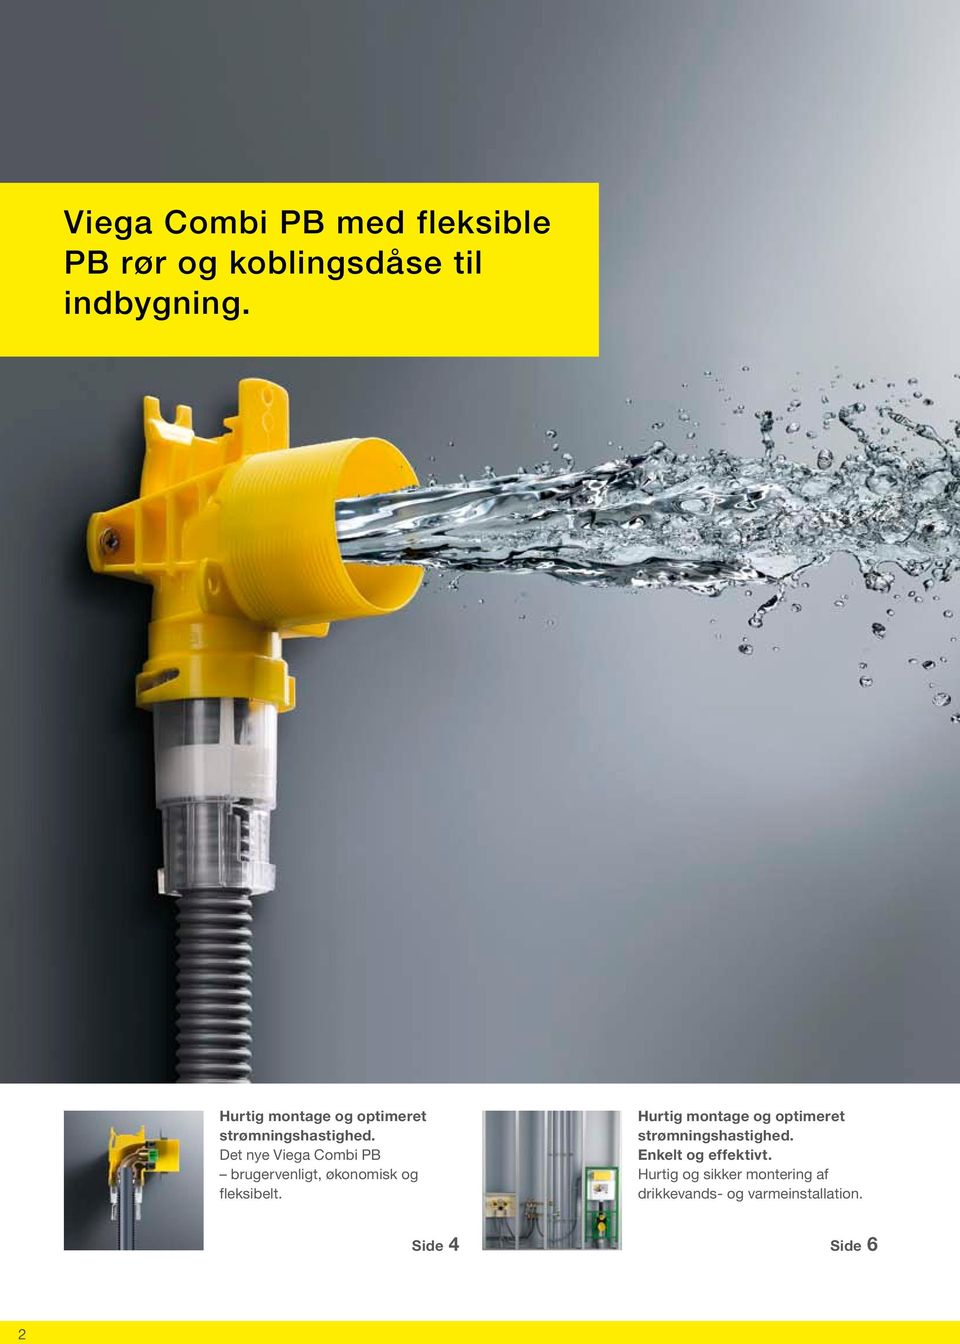 Det nye Viega Combi PB brugervenligt, økonomisk og fleksibelt.